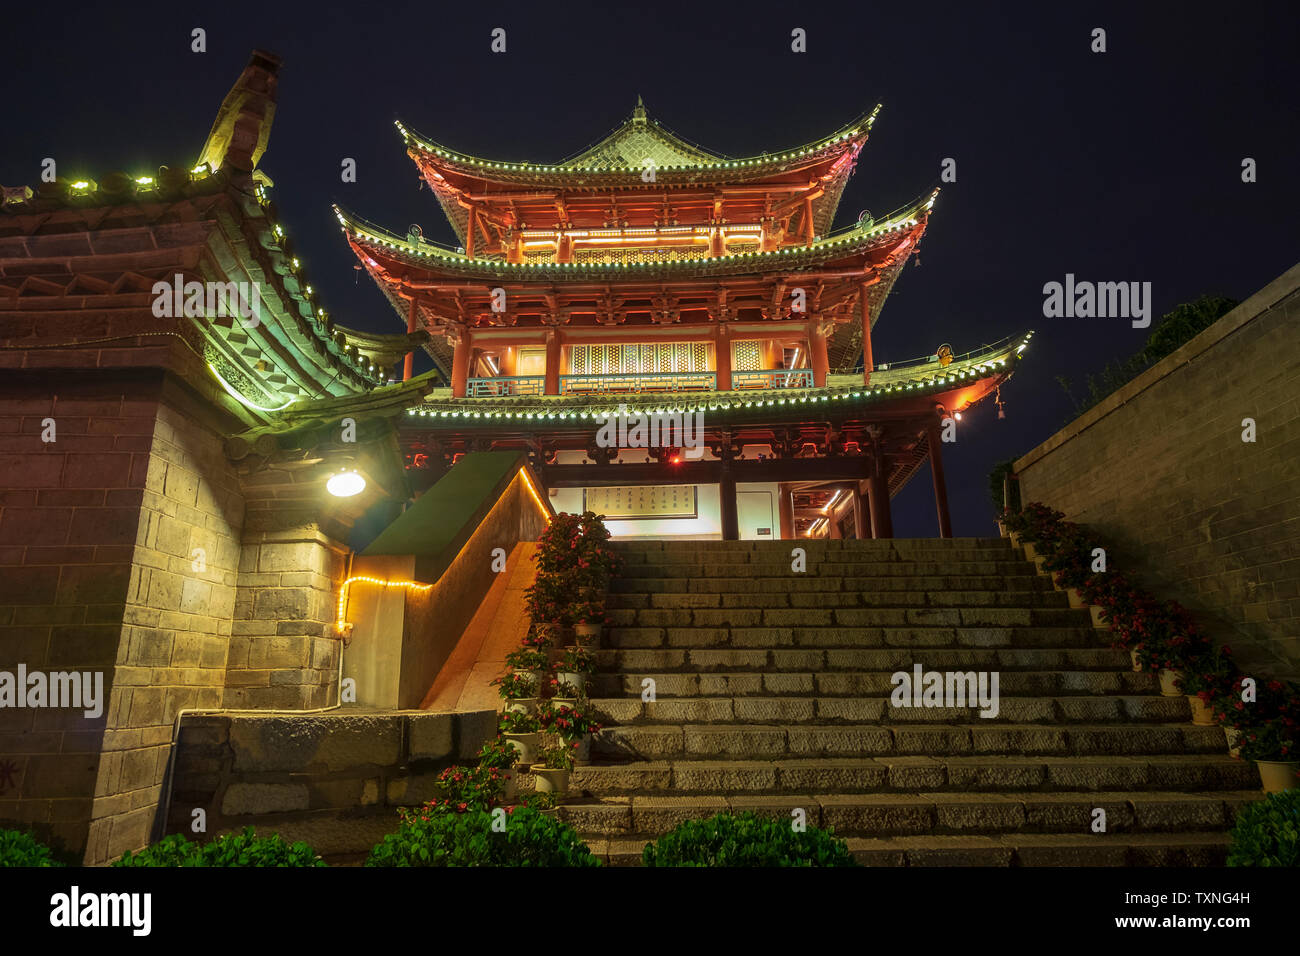 La puerta de la ciudad vieja, la escalinata y el templo de noche, Jianshu County, provincia de Hunan, China Foto de stock